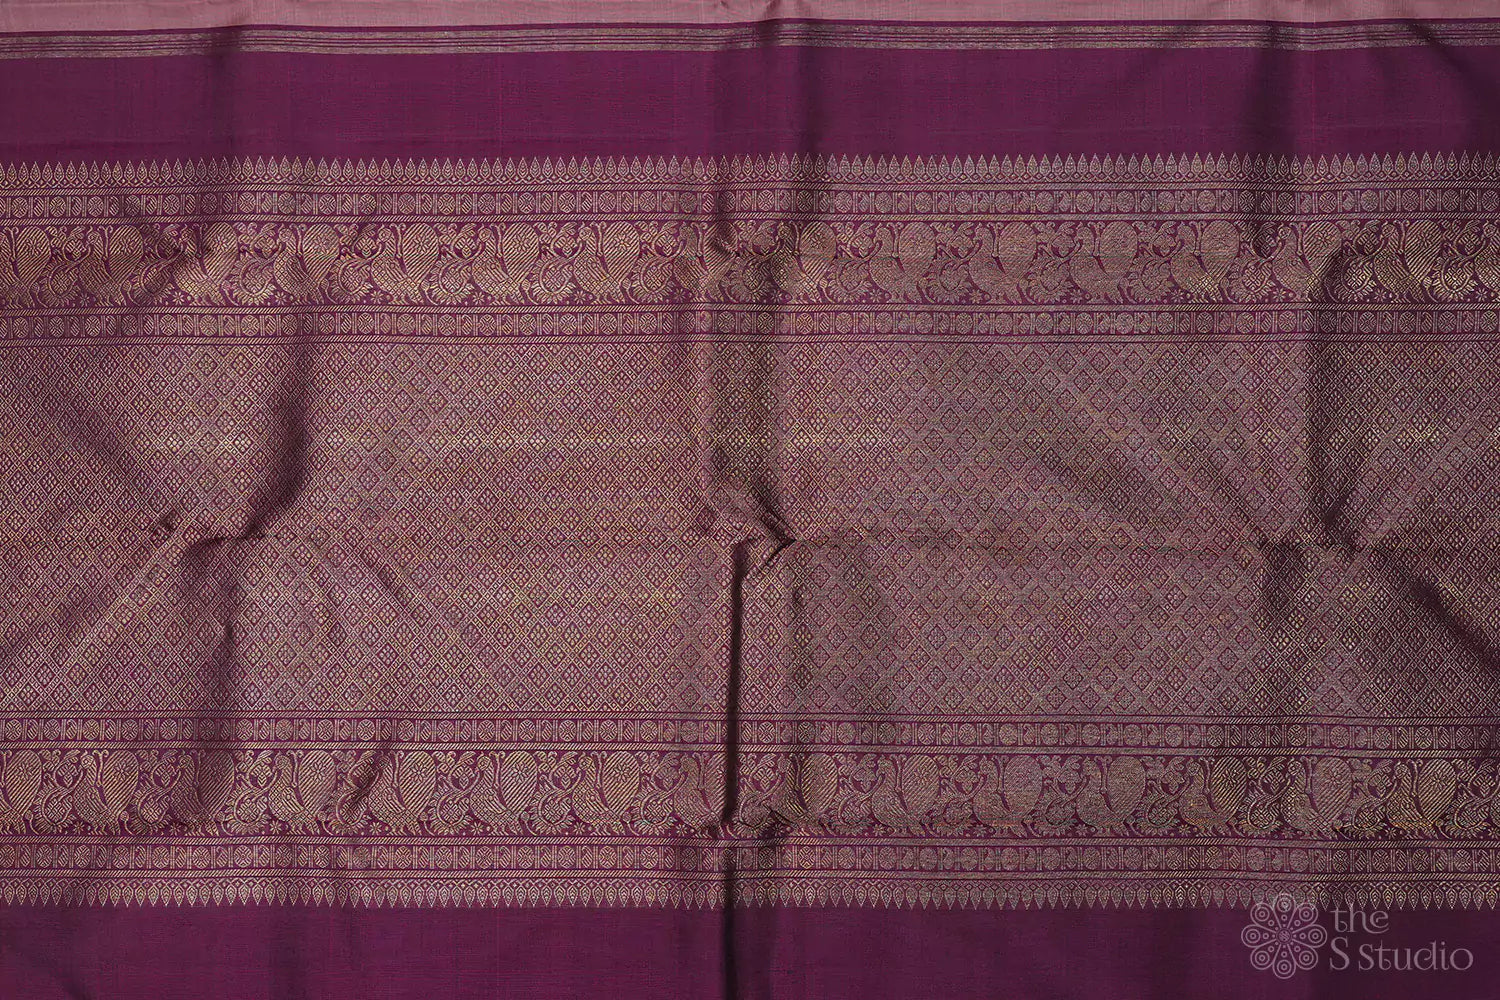 Onion pink kanjivaram saree with small buttas